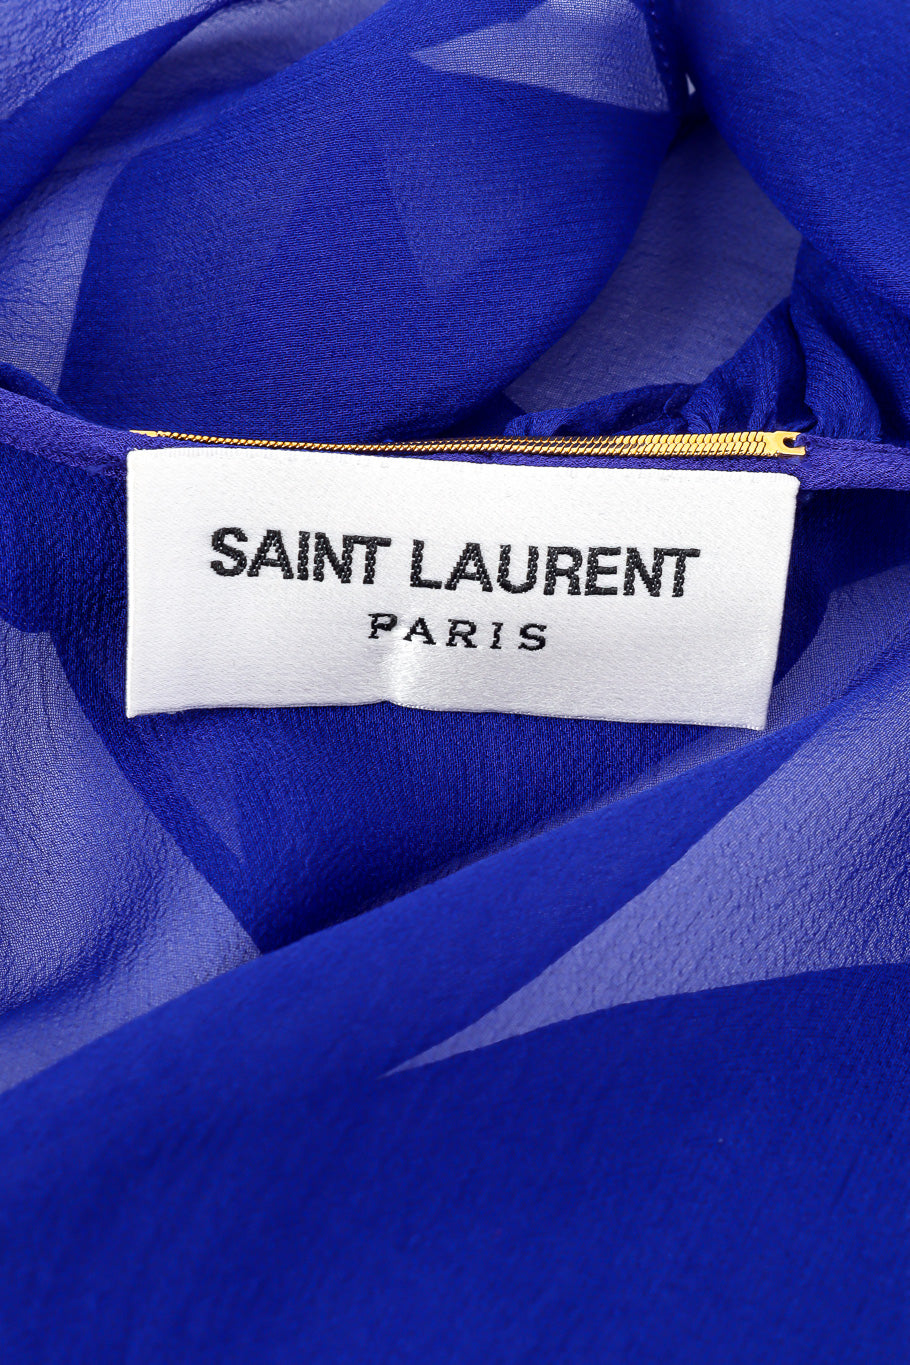 Saint Laurent 2020 Fall Sheer Silk Ruffle Dress label closeup @Recessla